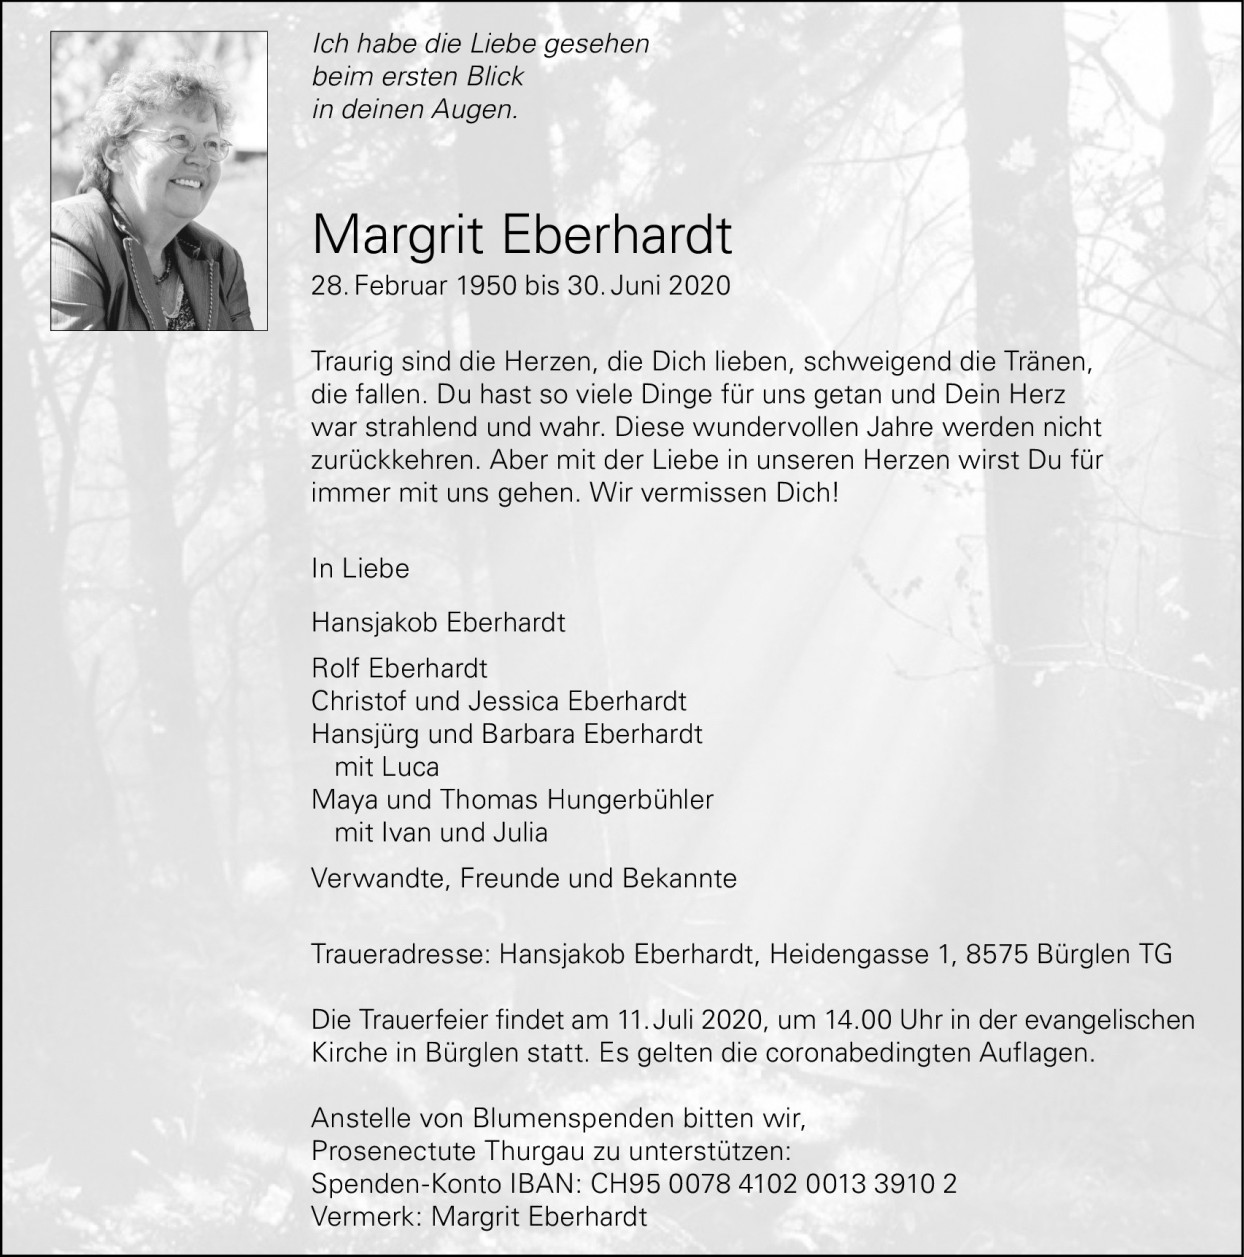 Margrit Eberhardt